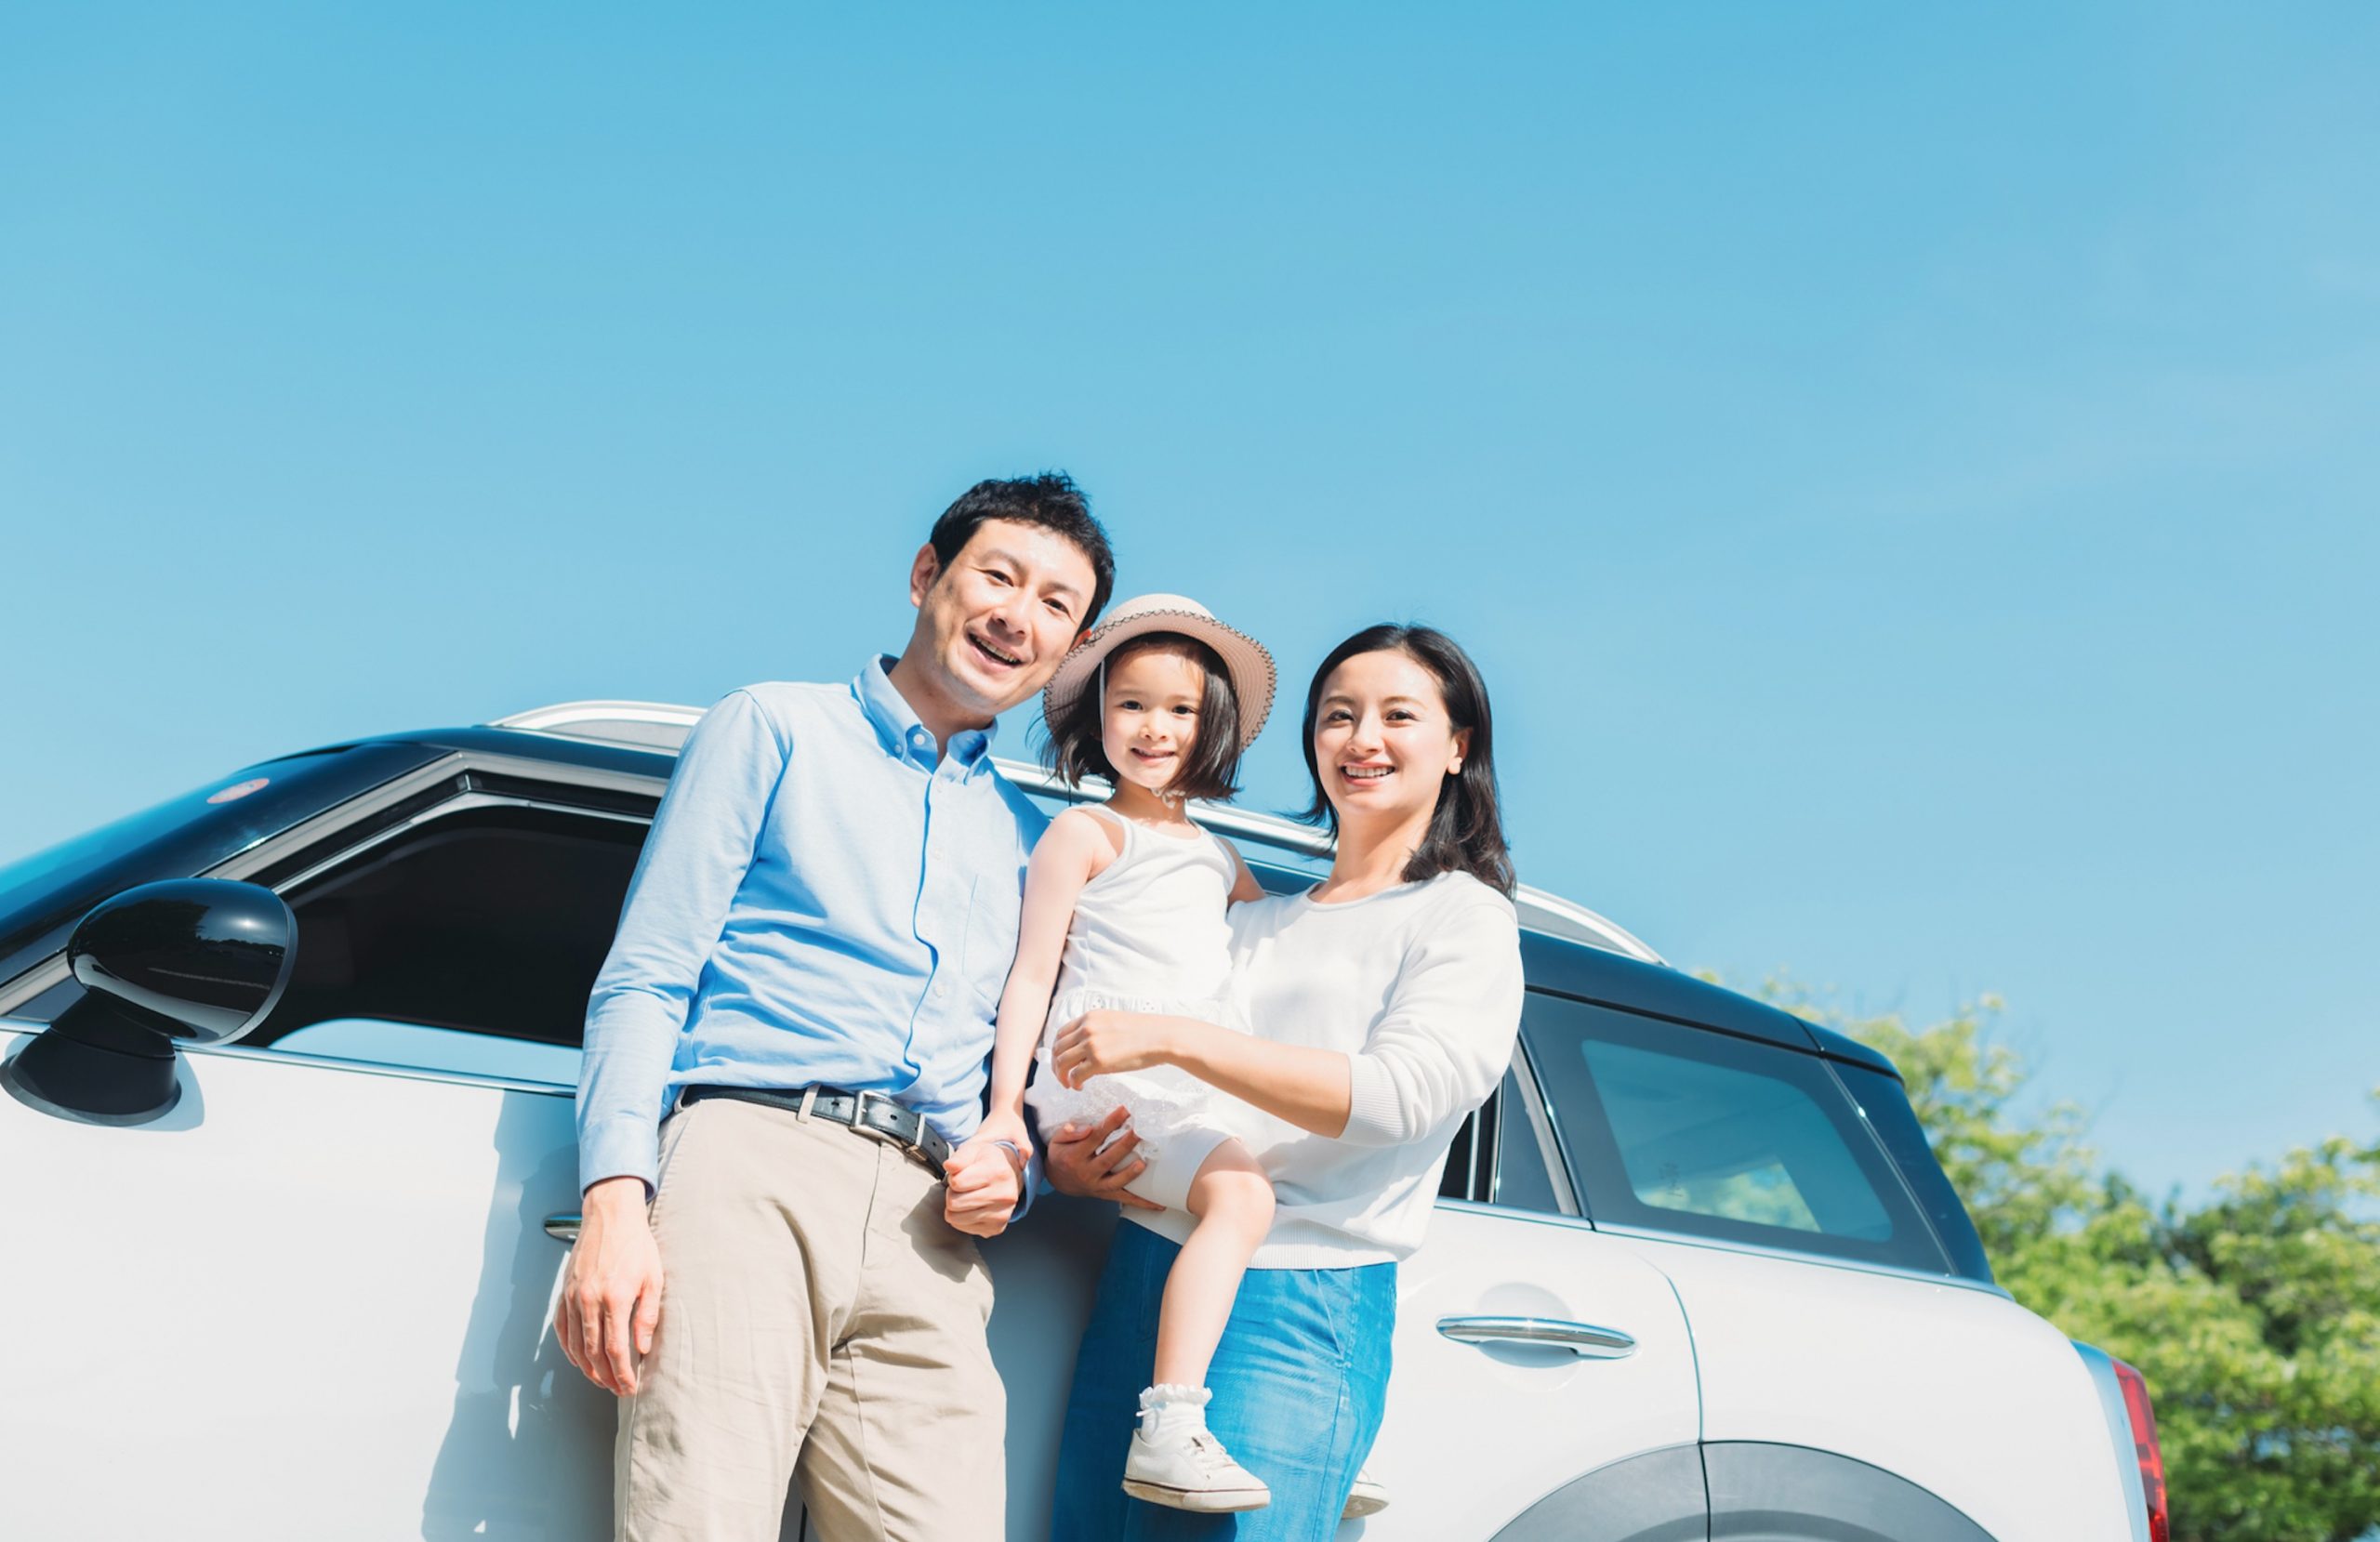 ダイレクト型自動車保険に乗り換える際の注意点や手続き方法を解説